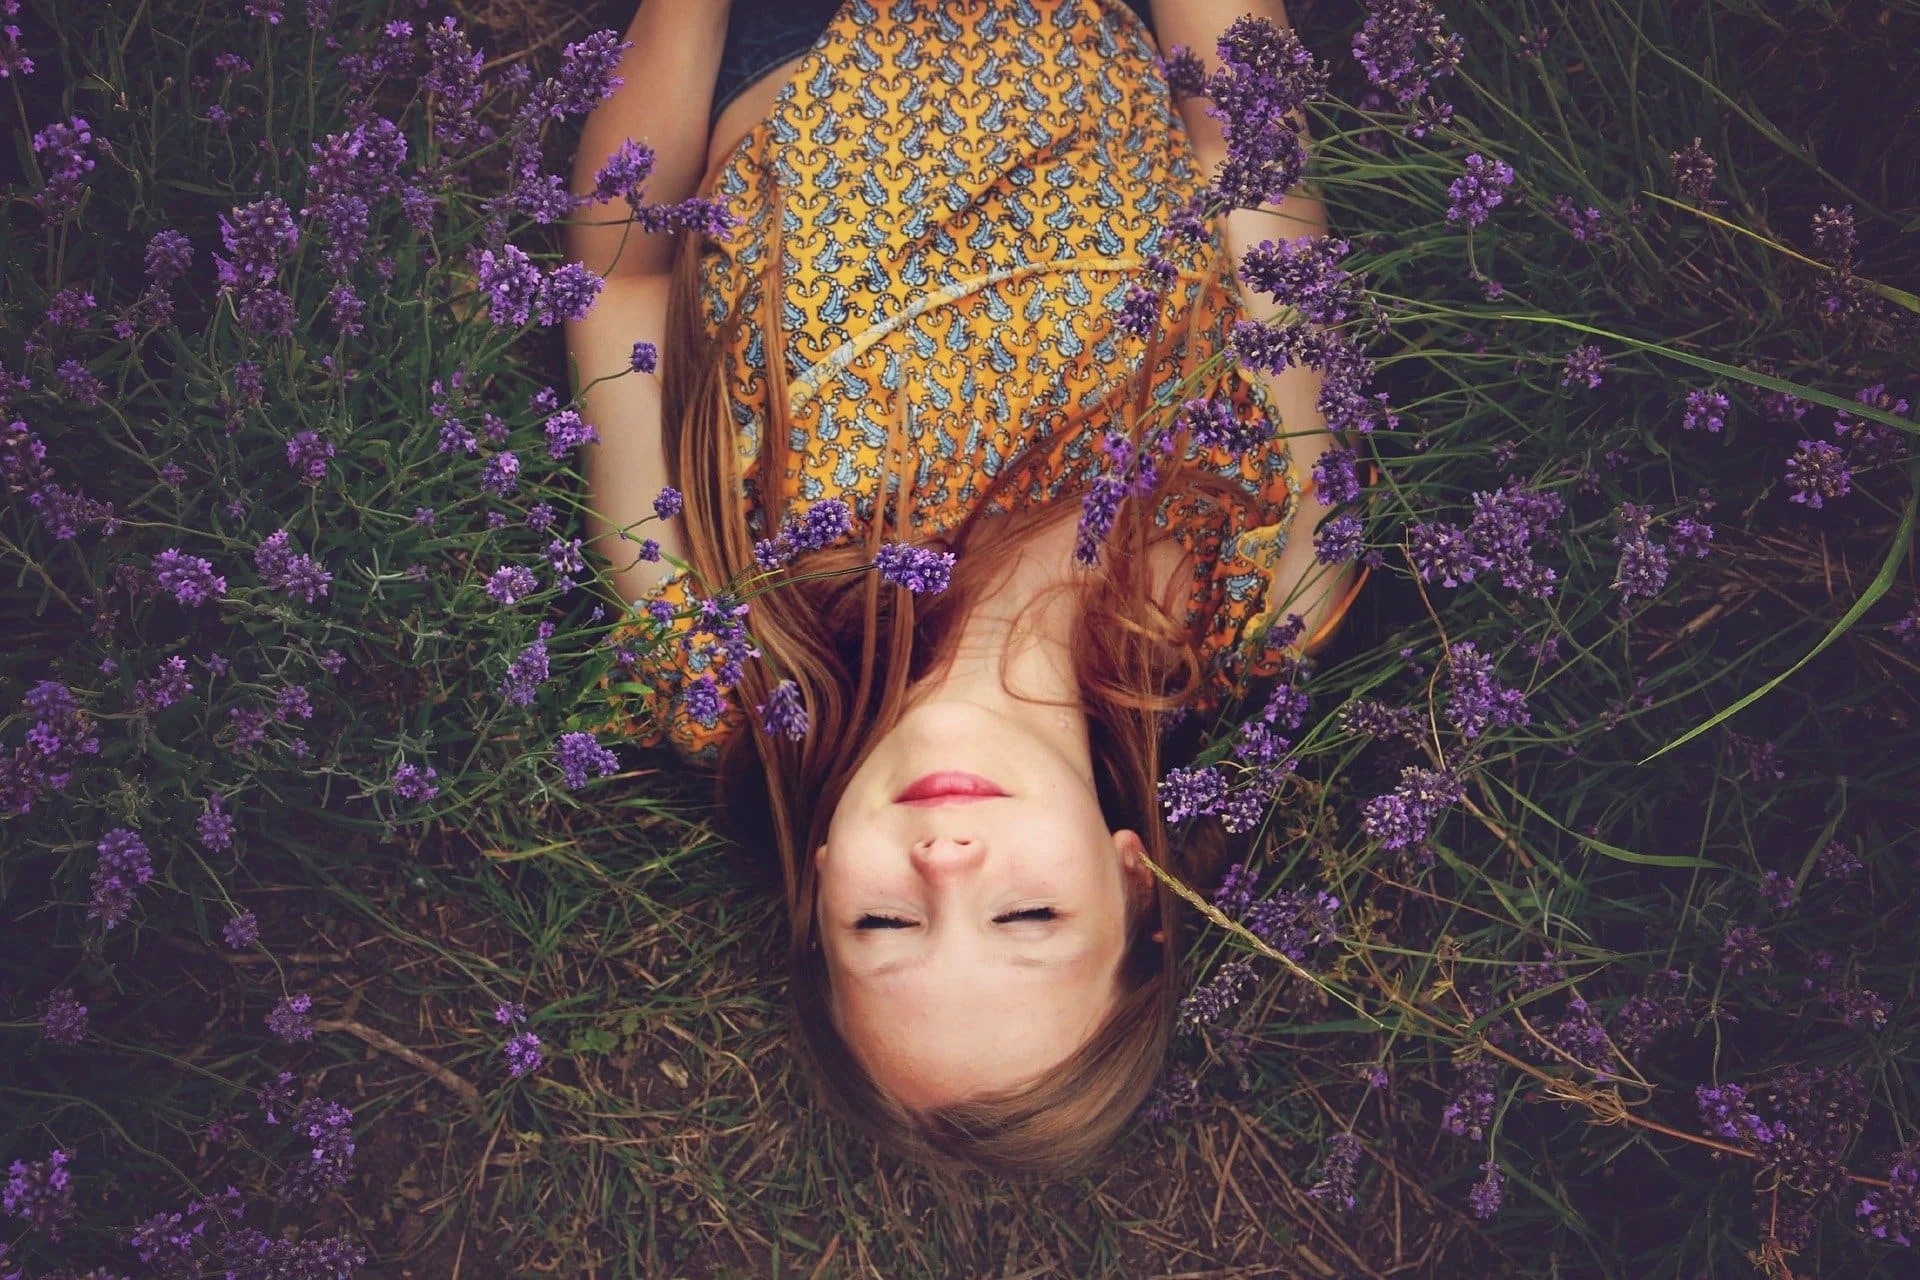 Ein Mädchen liegt entspannt in einem Feld von blühendem Lavendel, die Augen geschlossen und in tiefer Achtsamkeit versunken. Diese ruhige Szene spiegelt die Verbindung mit der Natur wider und betont die Bedeutung der Achtsamkeit, um im Moment zu leben und die Schönheit der einfachen Dinge im Leben zu schätzen.